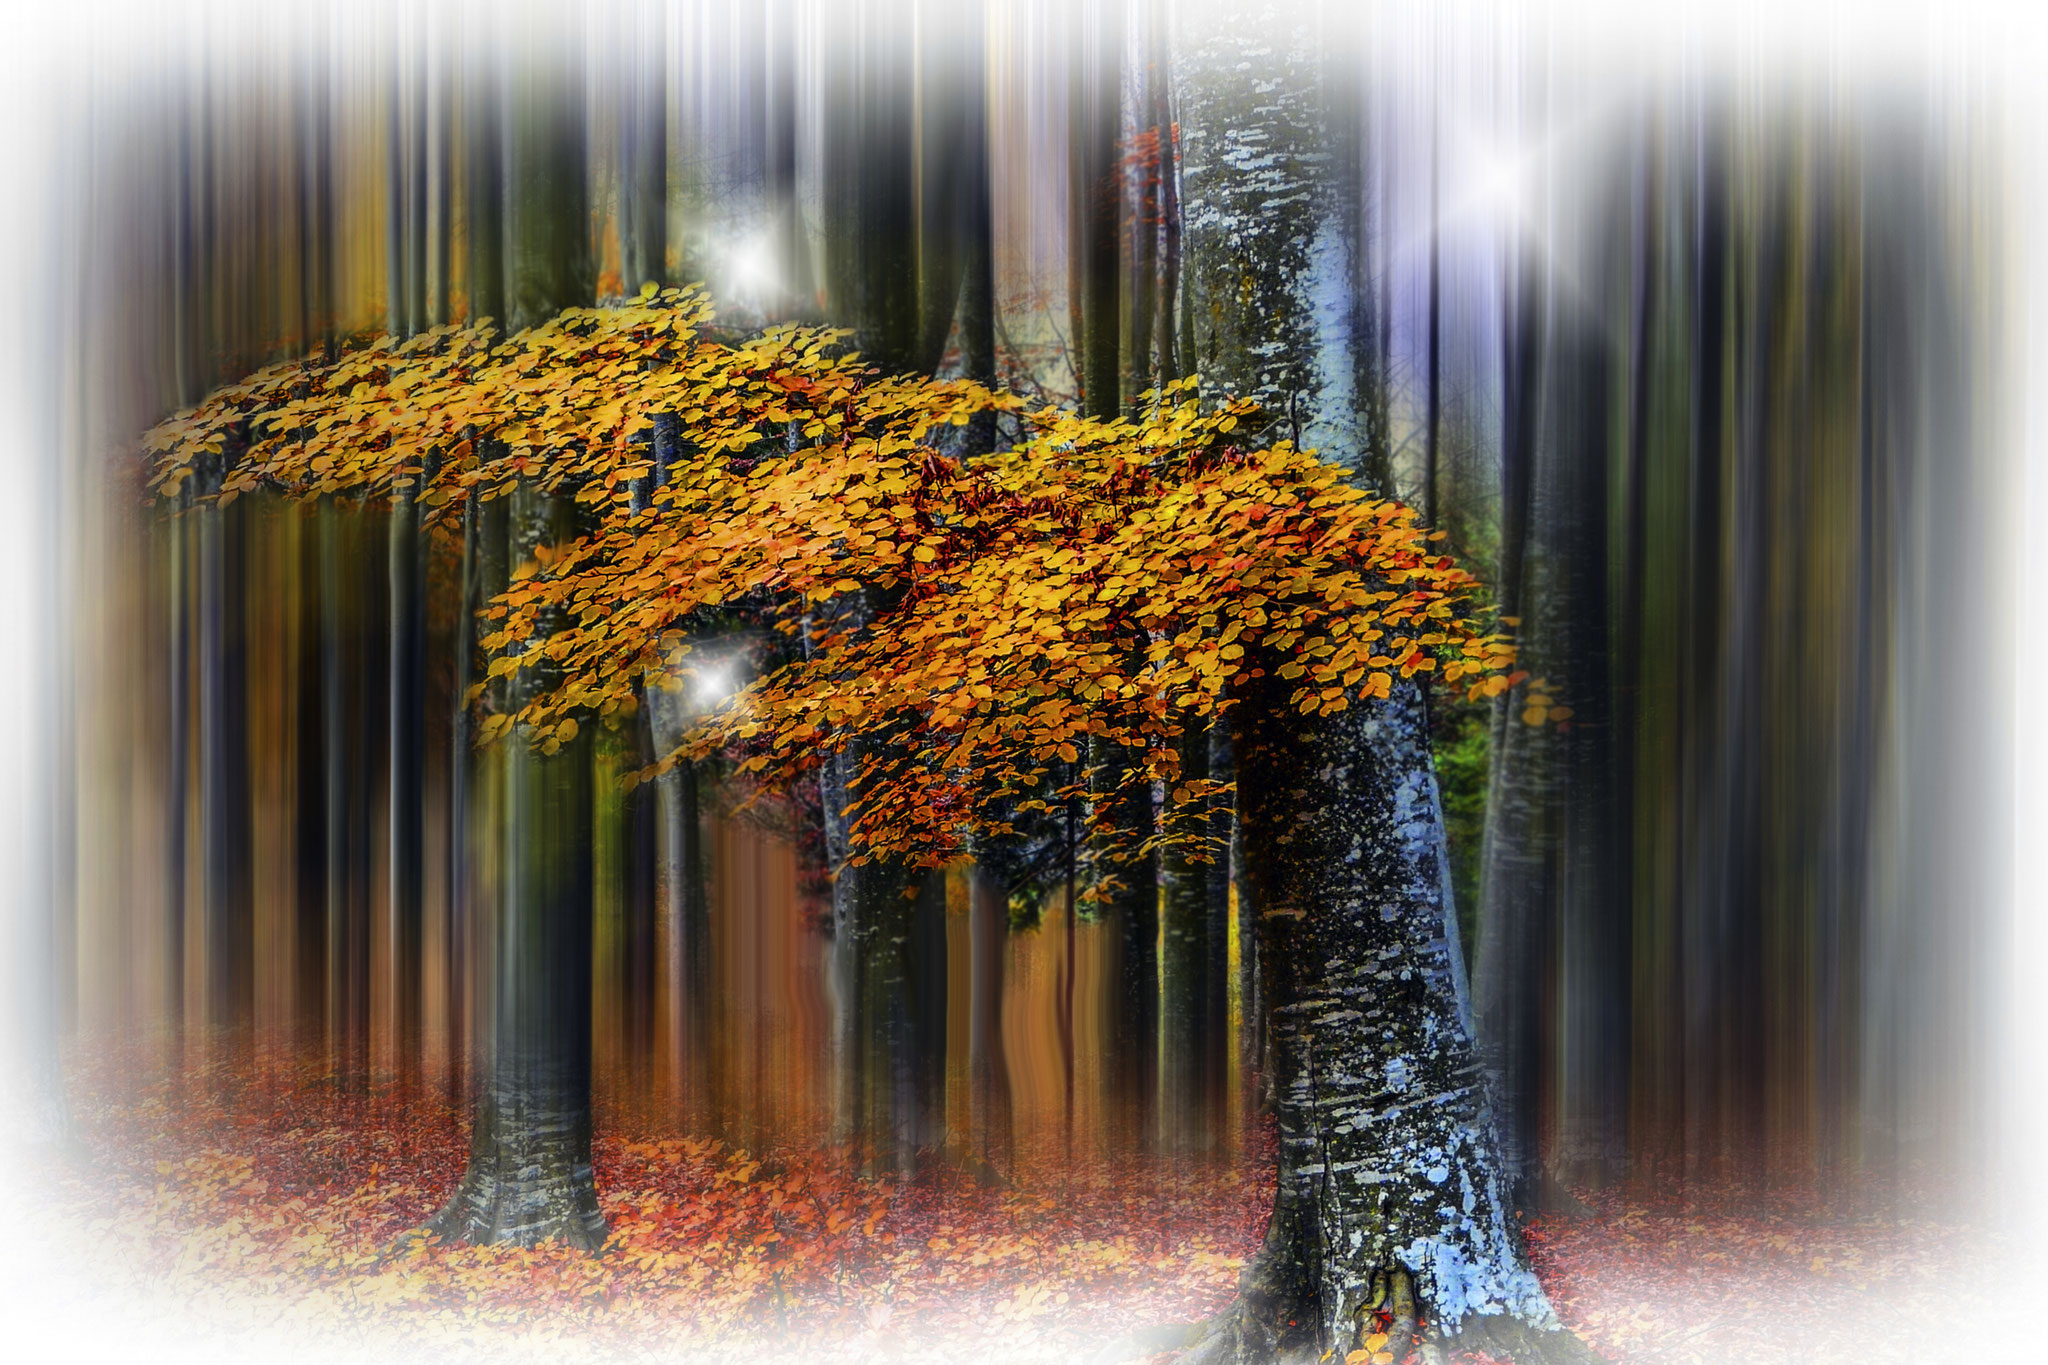 Incze Domokos AFIAP (RO) - Autumn foliage